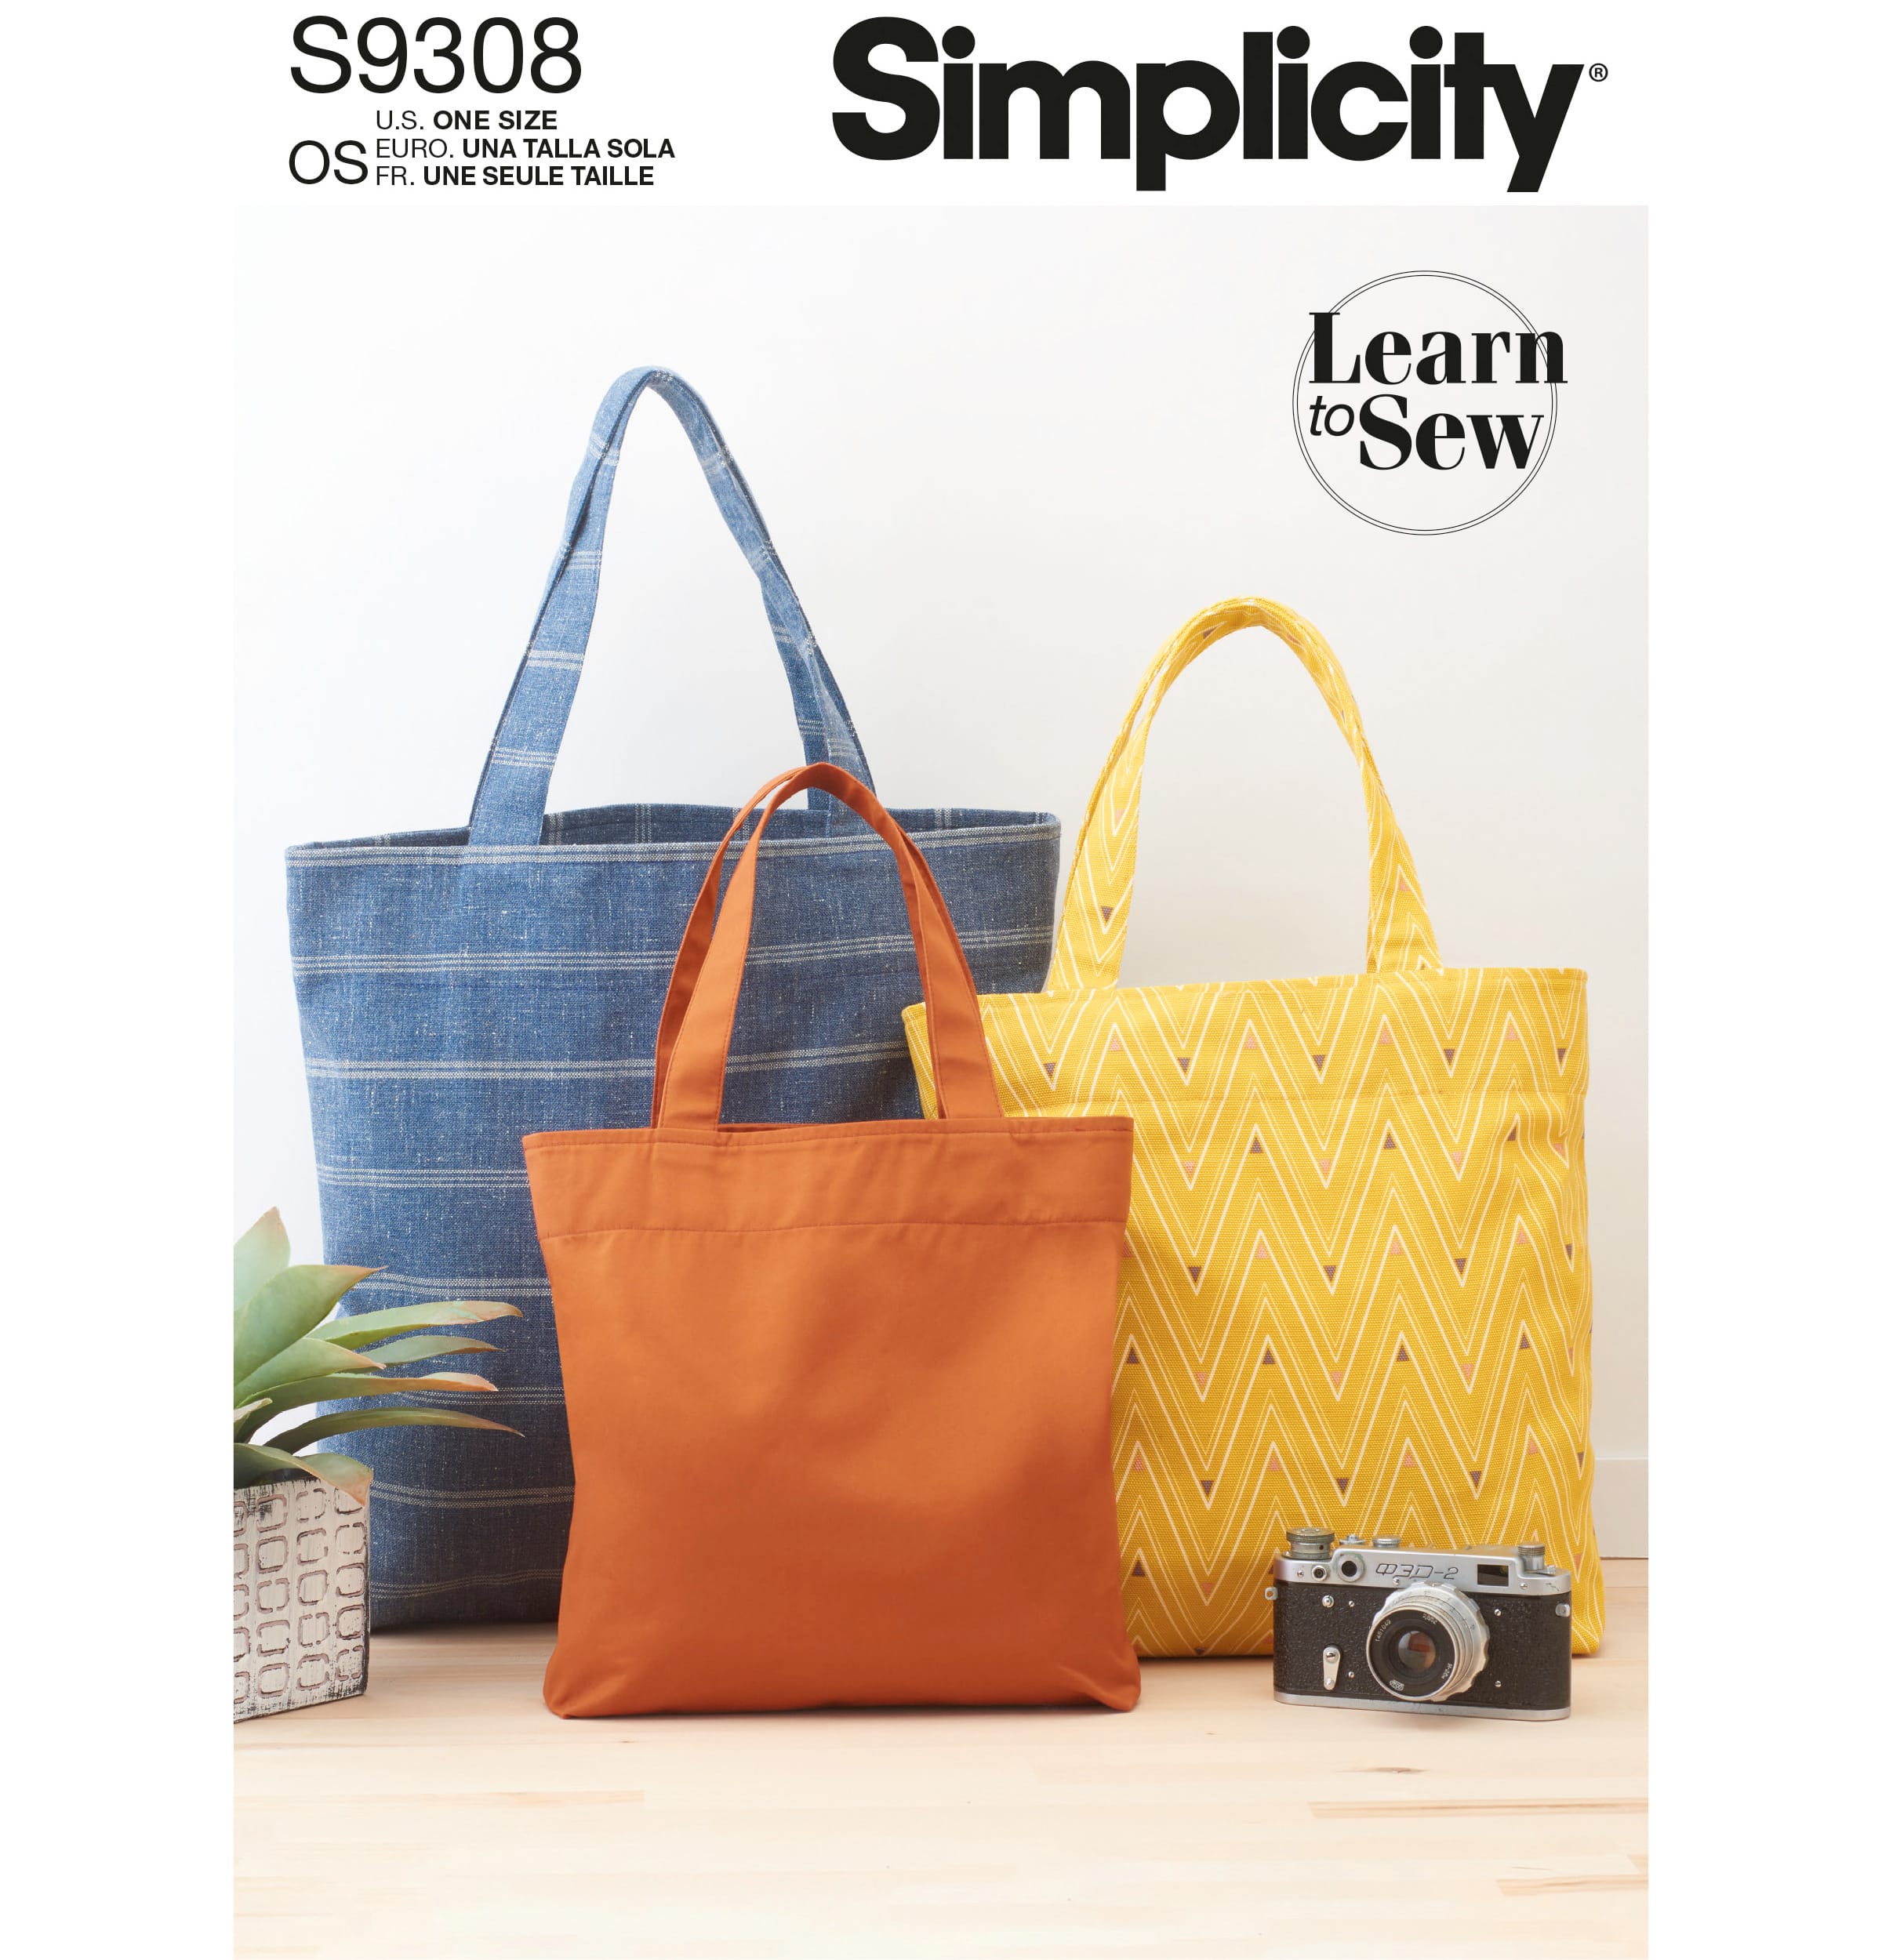 Simplicity® Pattern CS9318 (1-2-3-4)